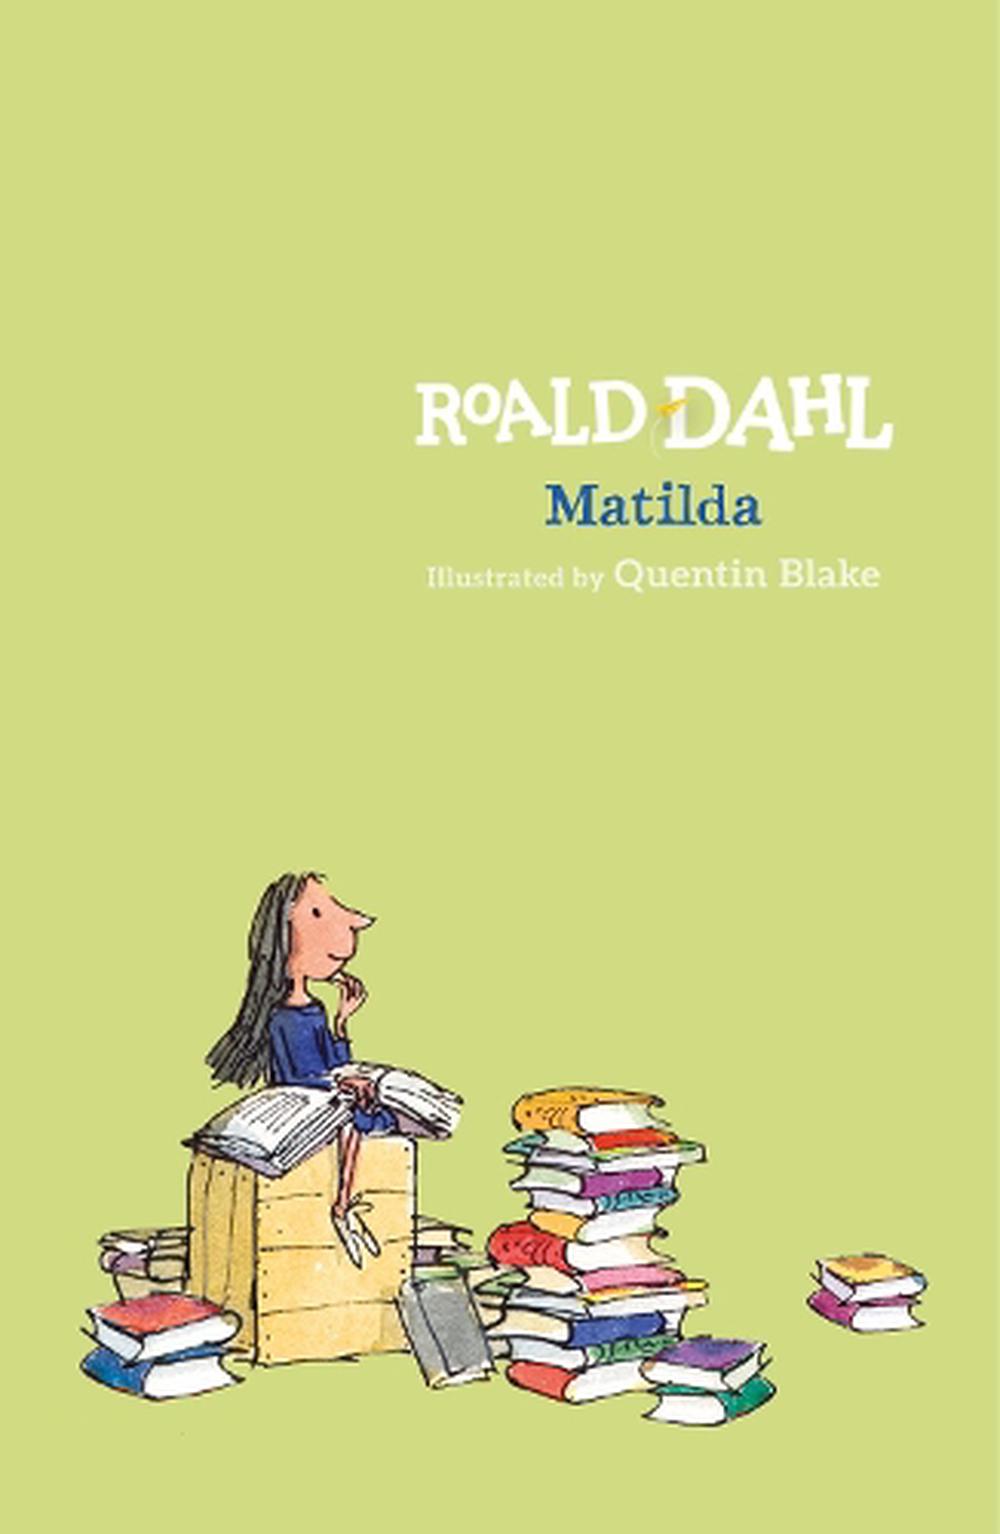 book review for matilda